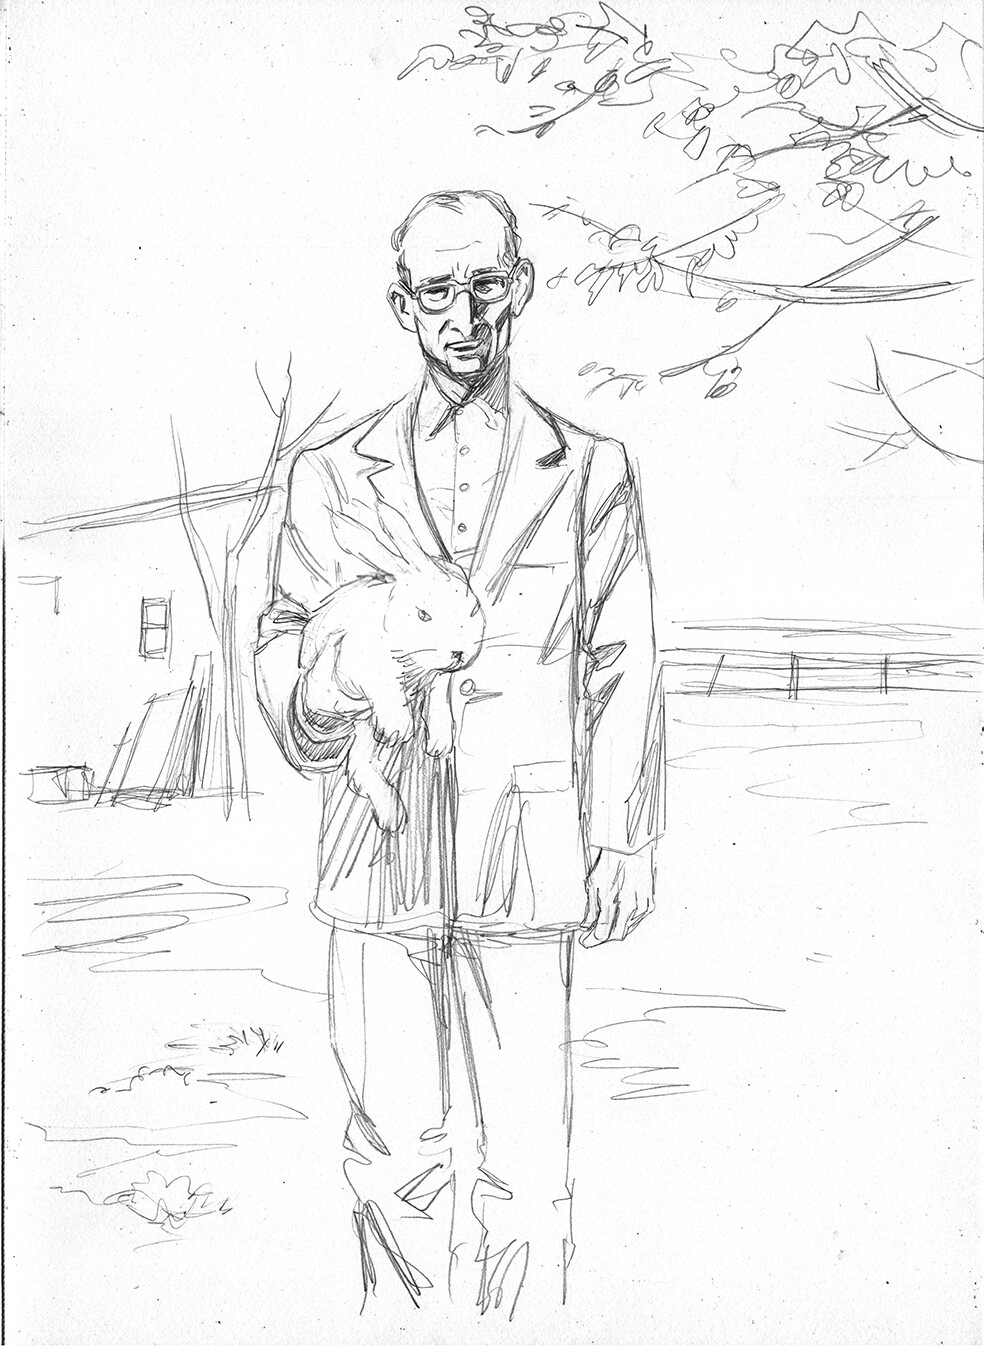 Monsieur K
Cover sketch